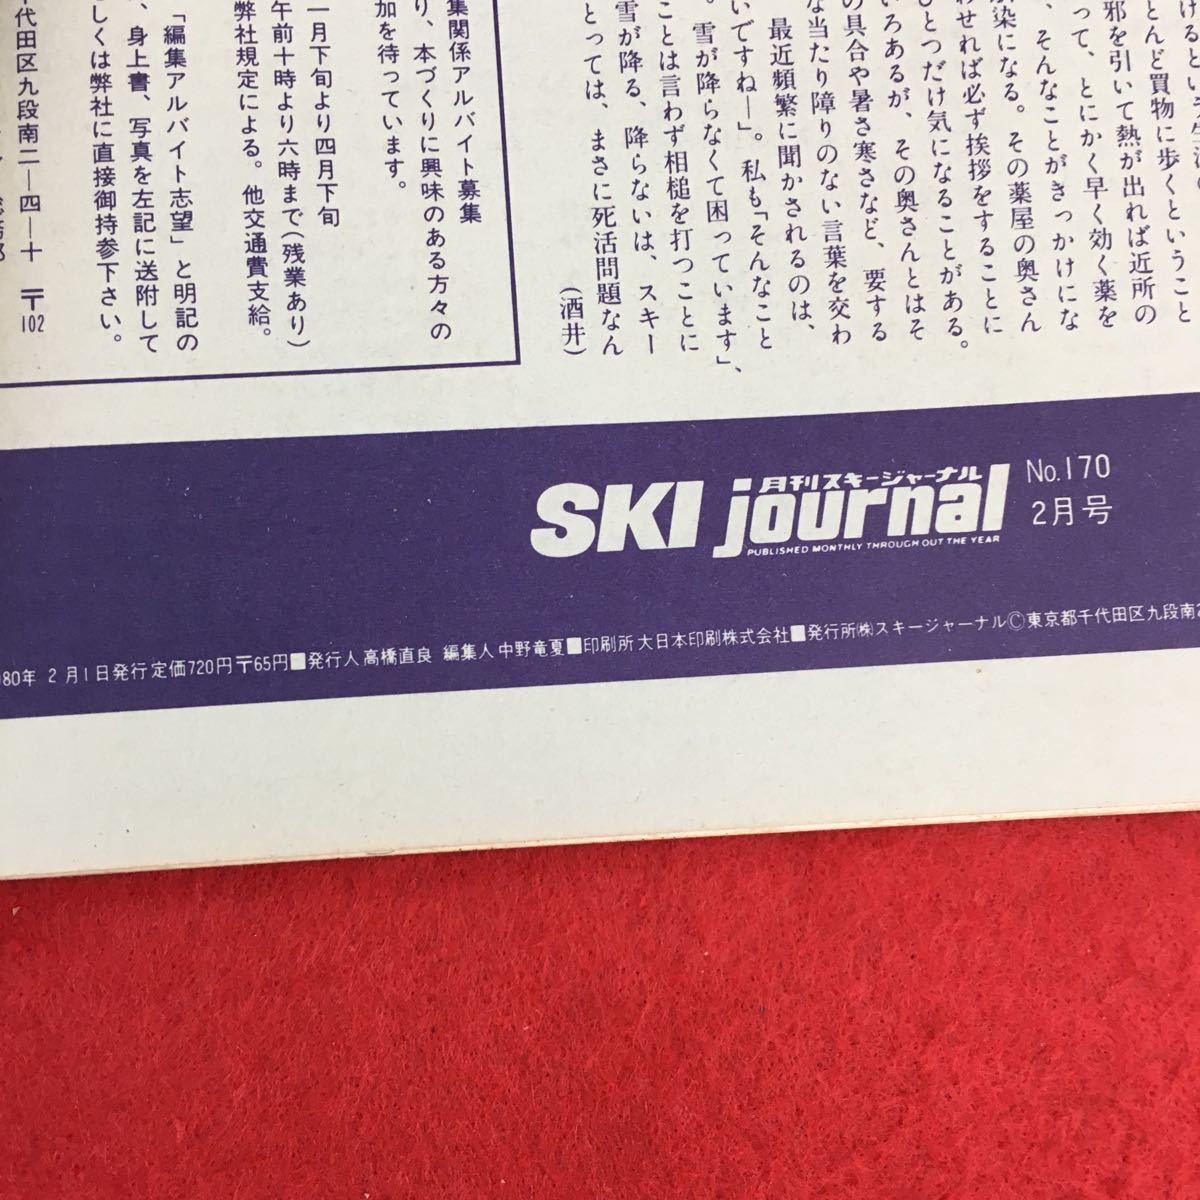 b-522 monthly ski journal ②No.170 ( stock ) ski journal Showa era 55 year issue *0